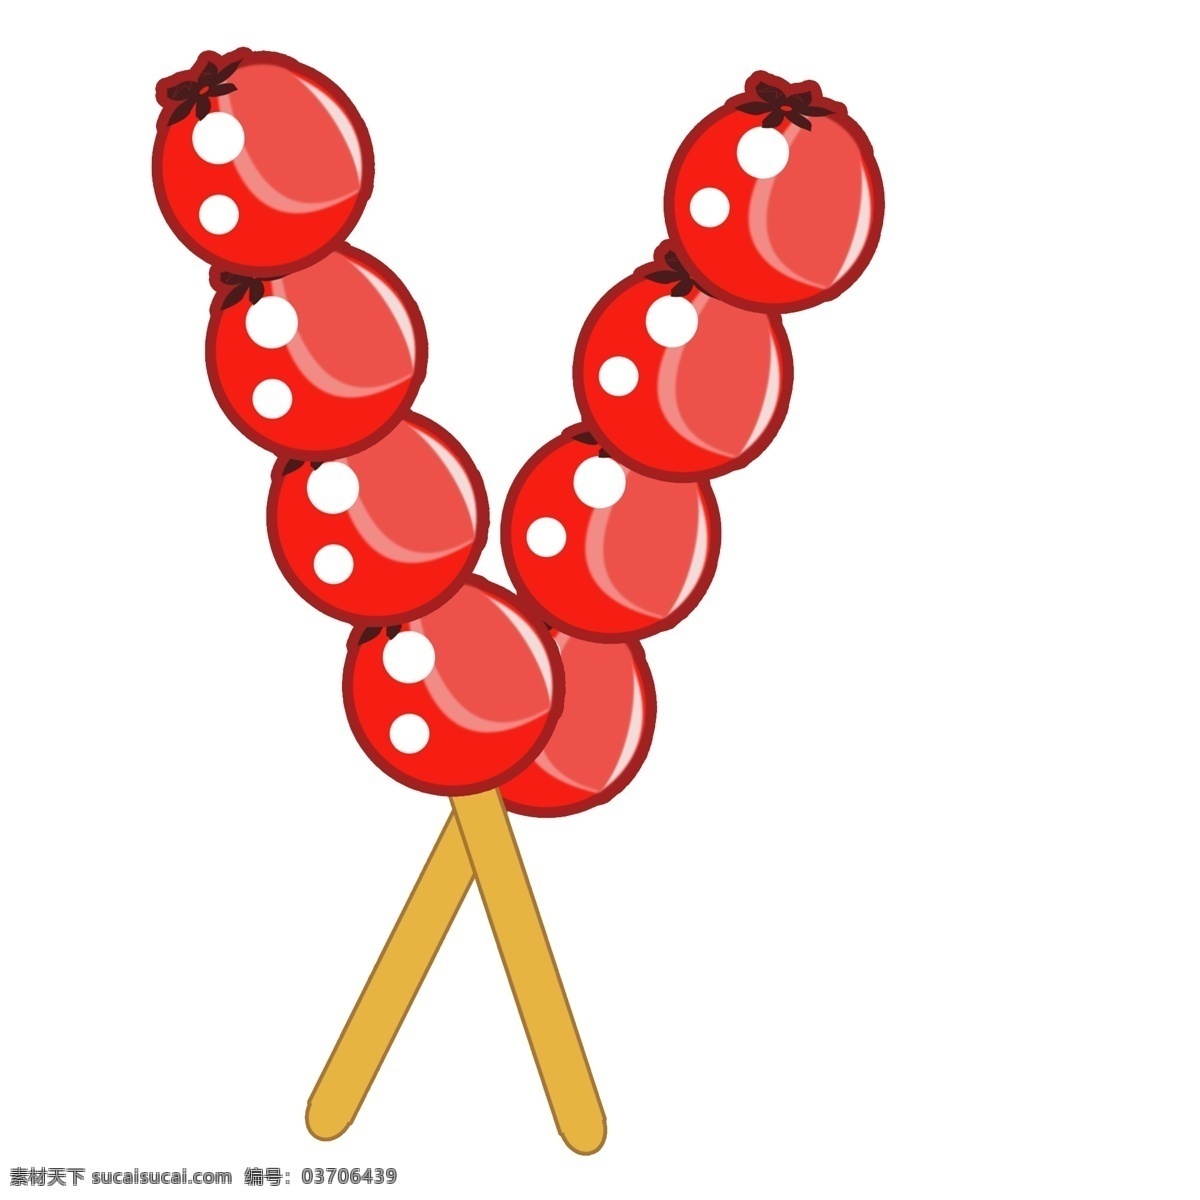 春节 发光 美味 冰糖葫芦 大红 扁平冰糖 葫芦 卡通 图案 节日